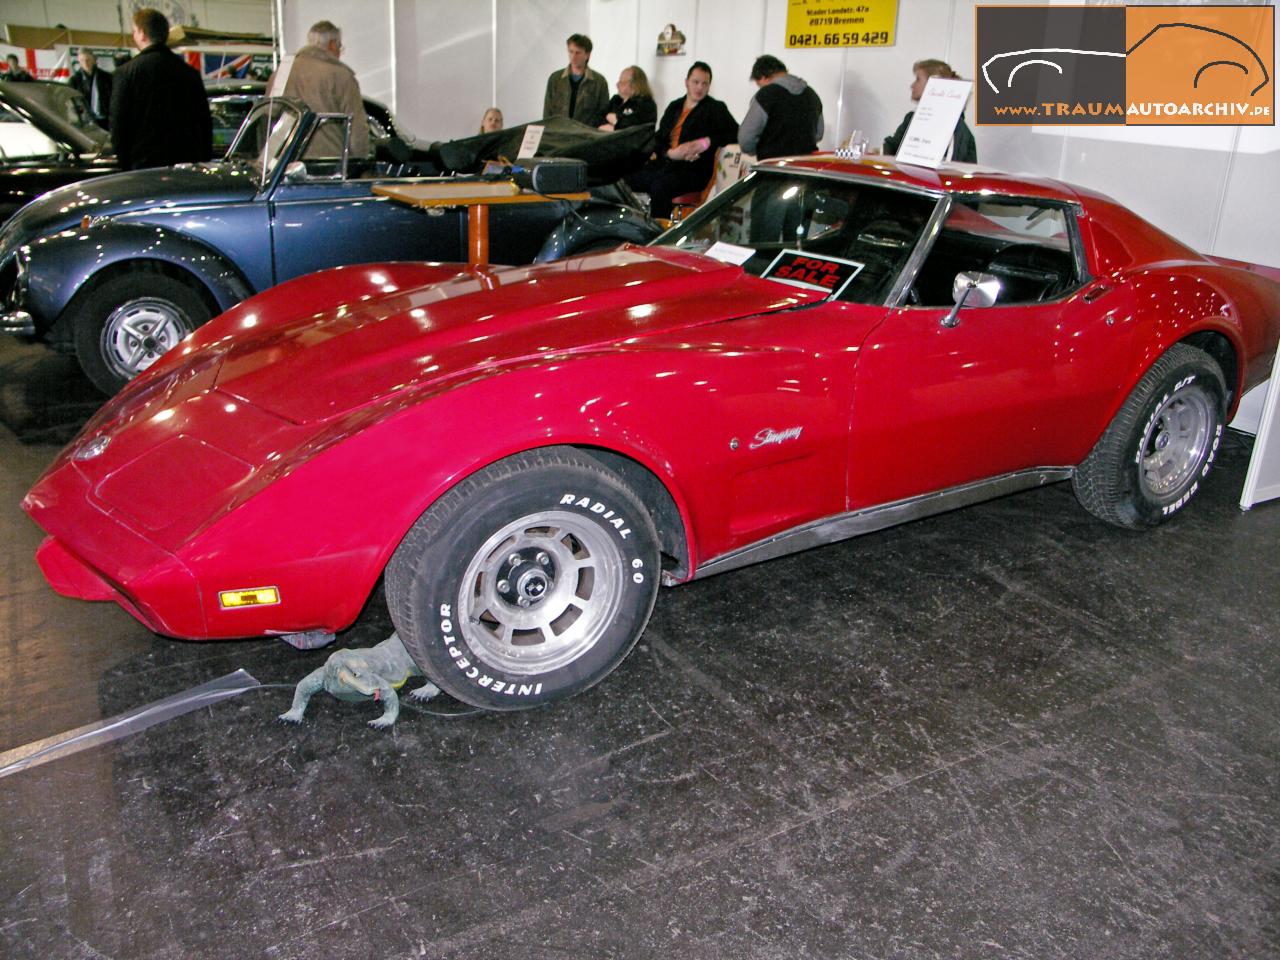 A Chevrolet Corvette '1975.jpg 206.6K